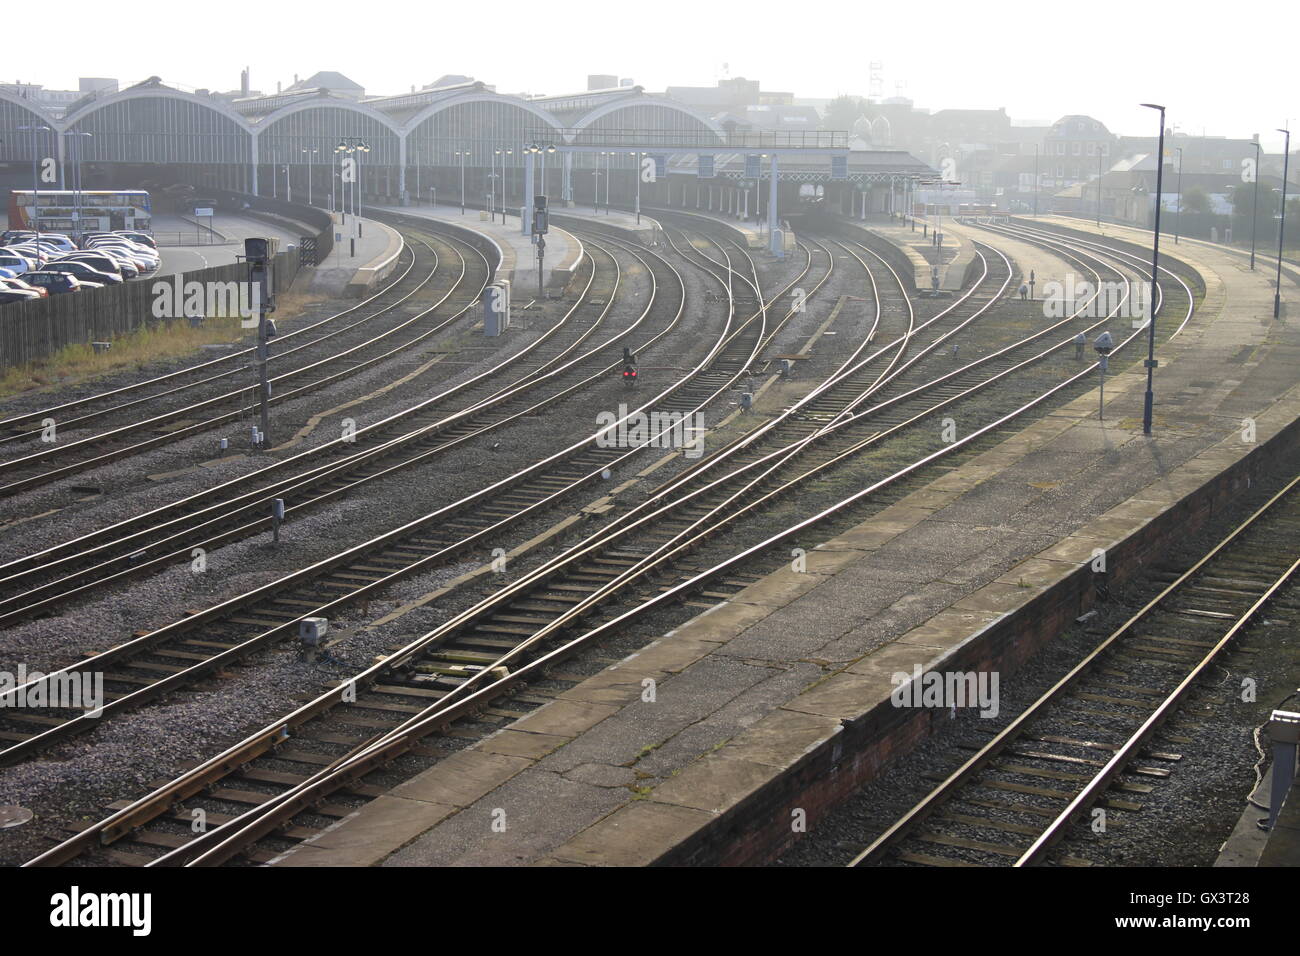 Morgensonne funkeln auf Schienen Linien Plattformen Rumpf Bahnhof england Stockfoto